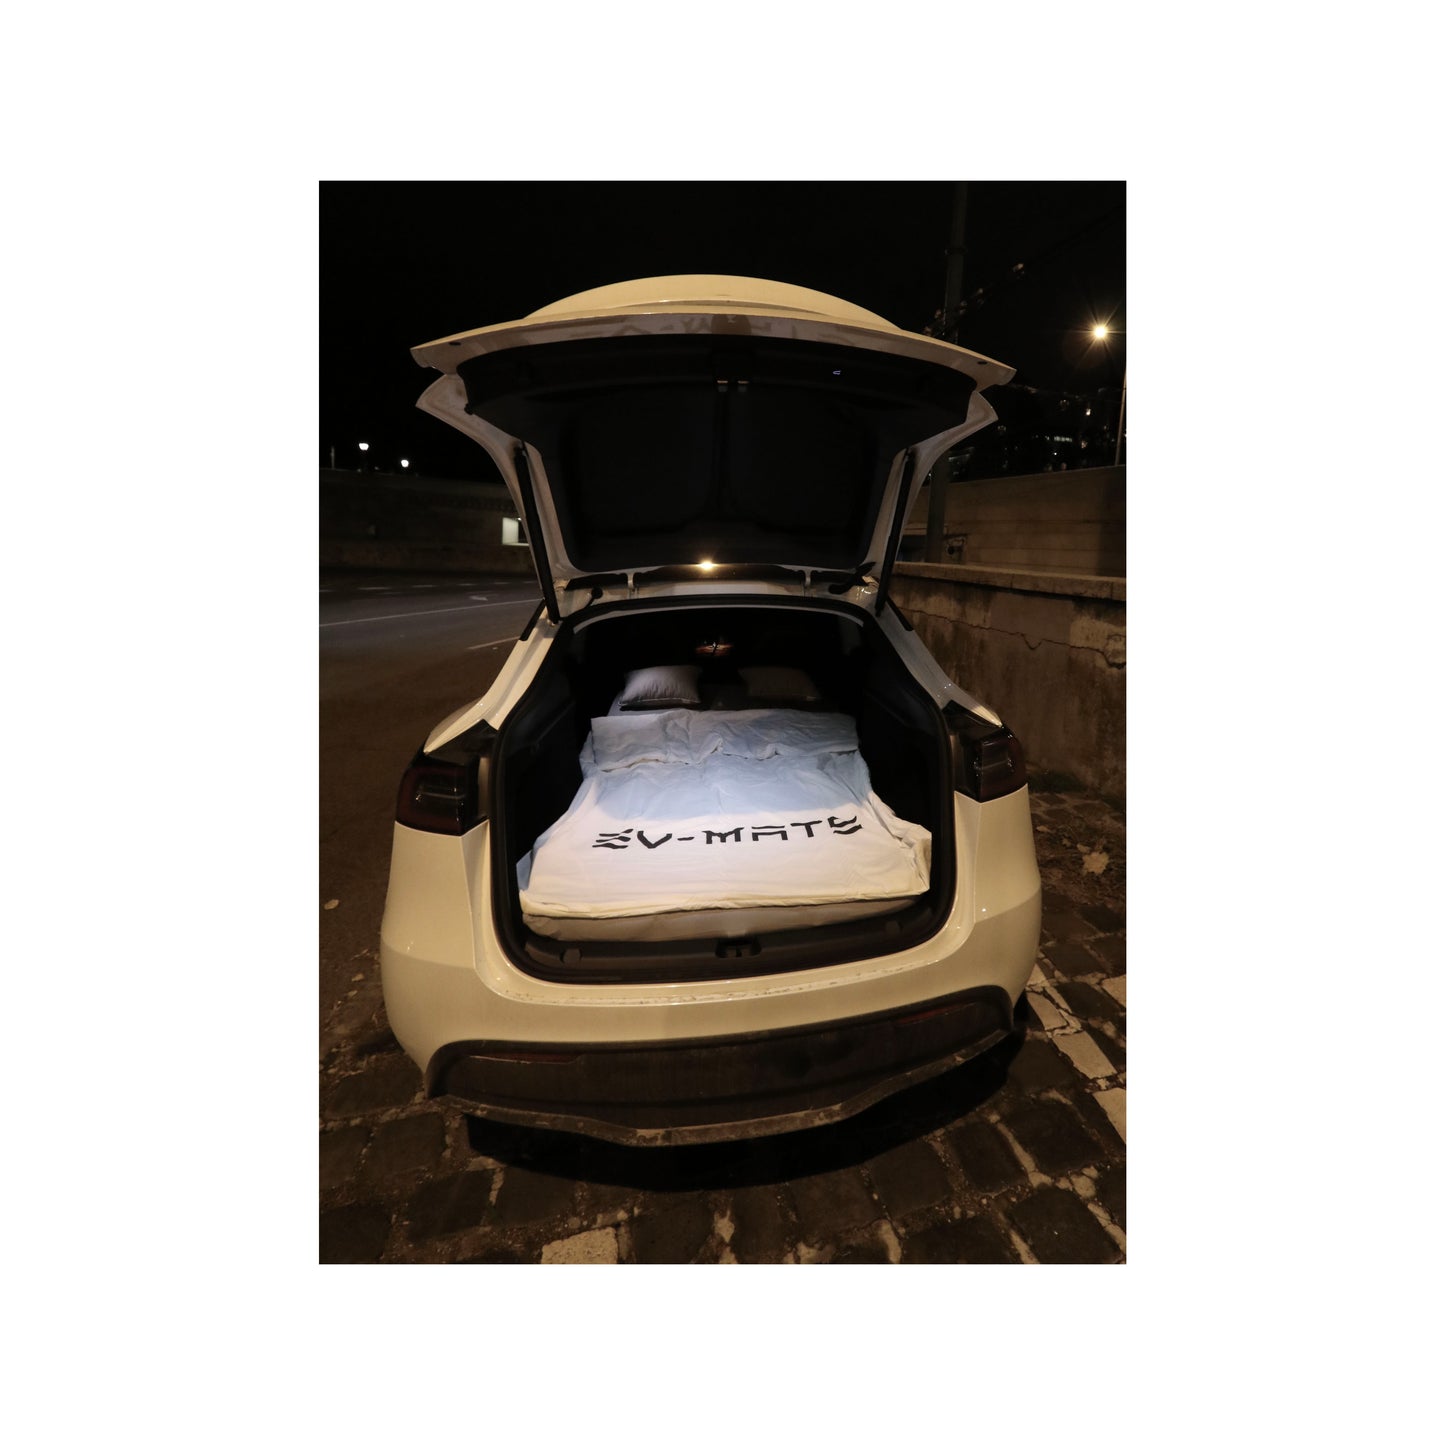 EV-MATS Basic CAMP SET för Tesla Model 3 inkluderar Tesla-madrassen, den vattentäta väskan som passar i Tesla Model 3:s bakre bagageutrymme, ett lakan, en täcke, 2 kuddar och ett kuddskydd